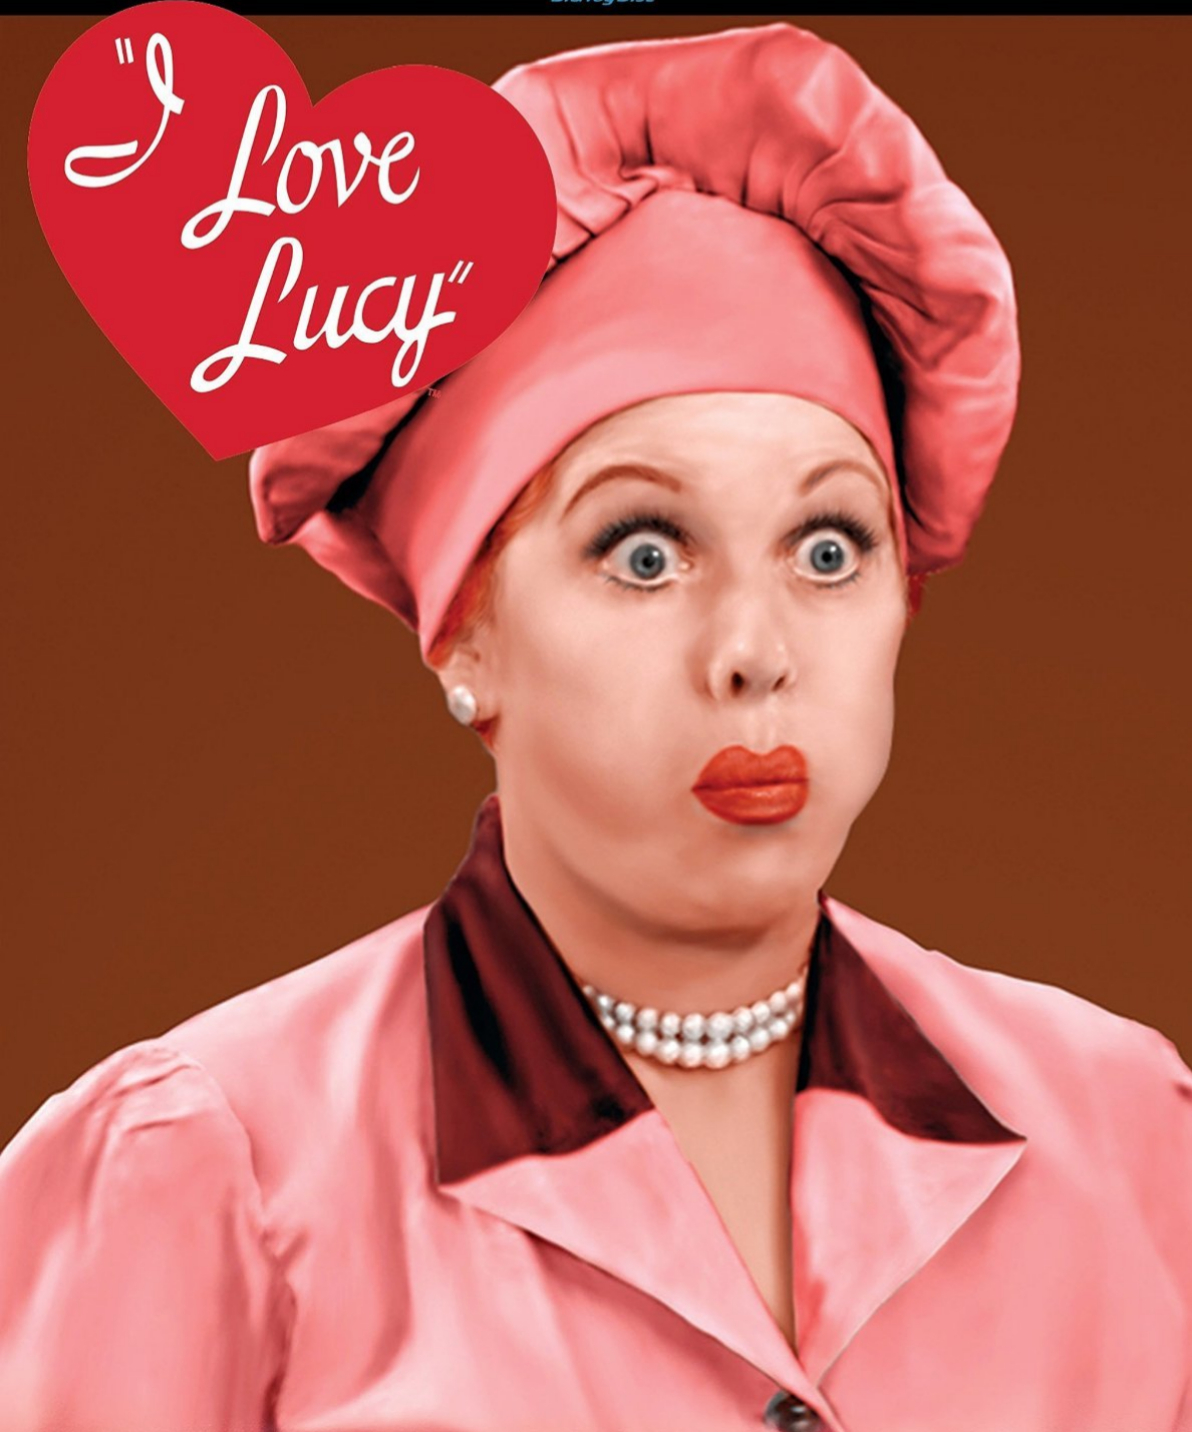 Una de las imágenes icónicas de "I love Lucy".